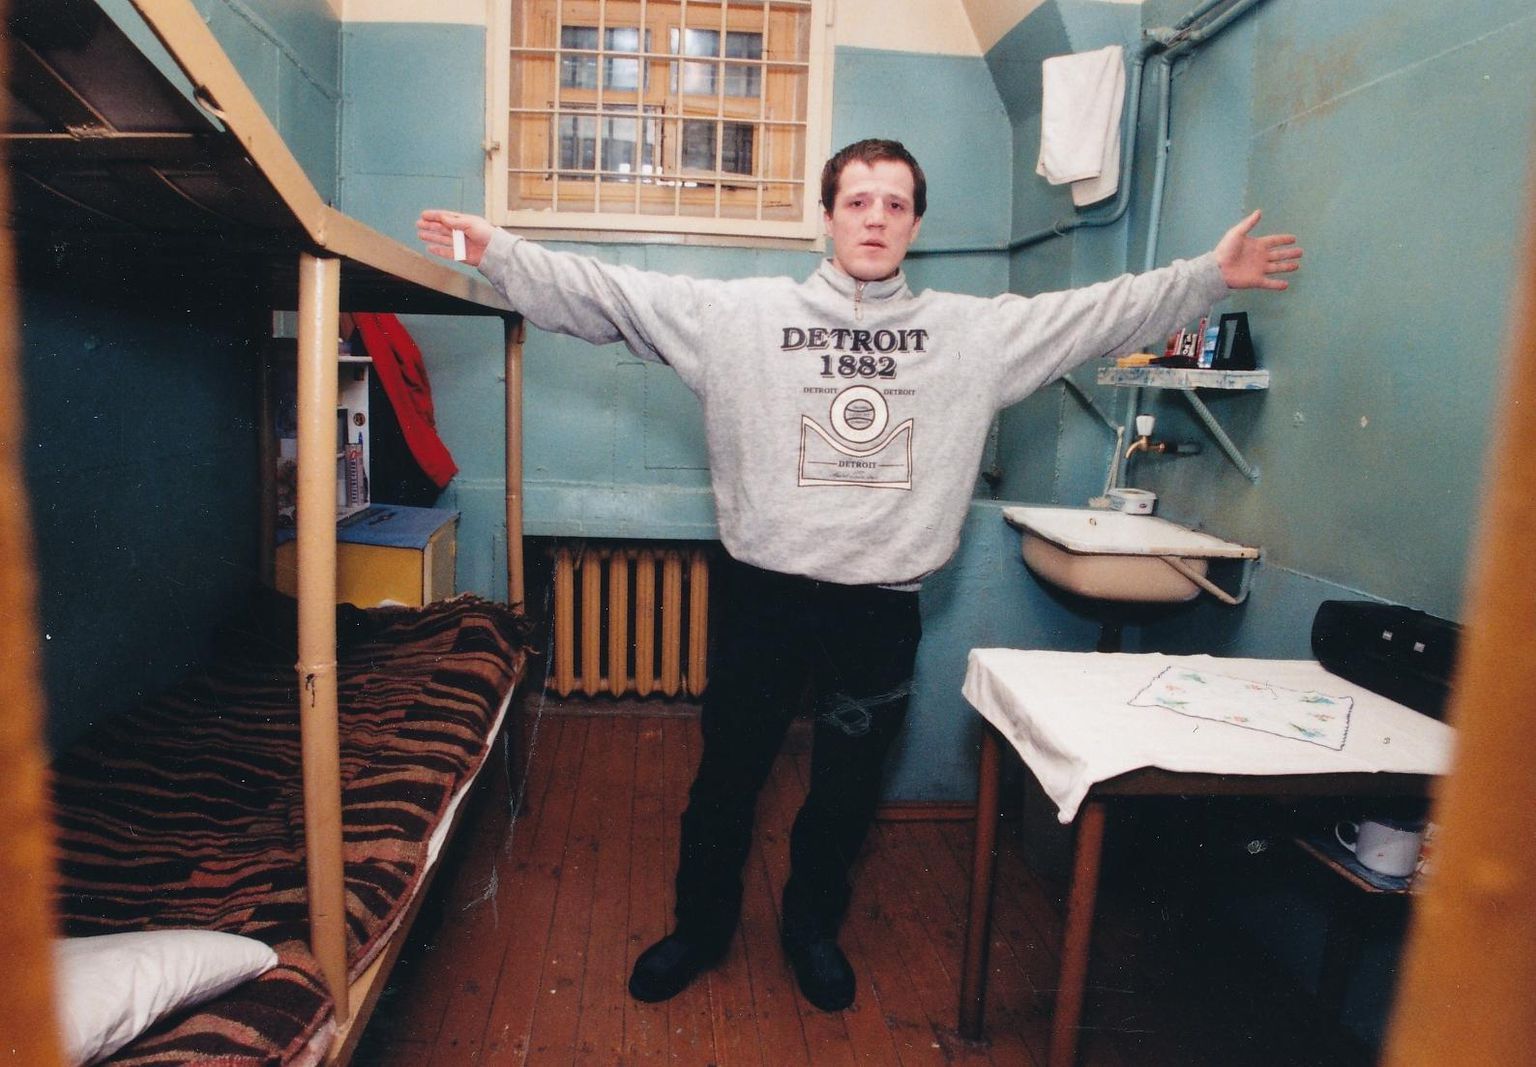 Александр Николаев в камере смертников в 1990-е годы. В тот момент, когда был сделан снимок, он ожидал приведения в исполнение смертного приговора.